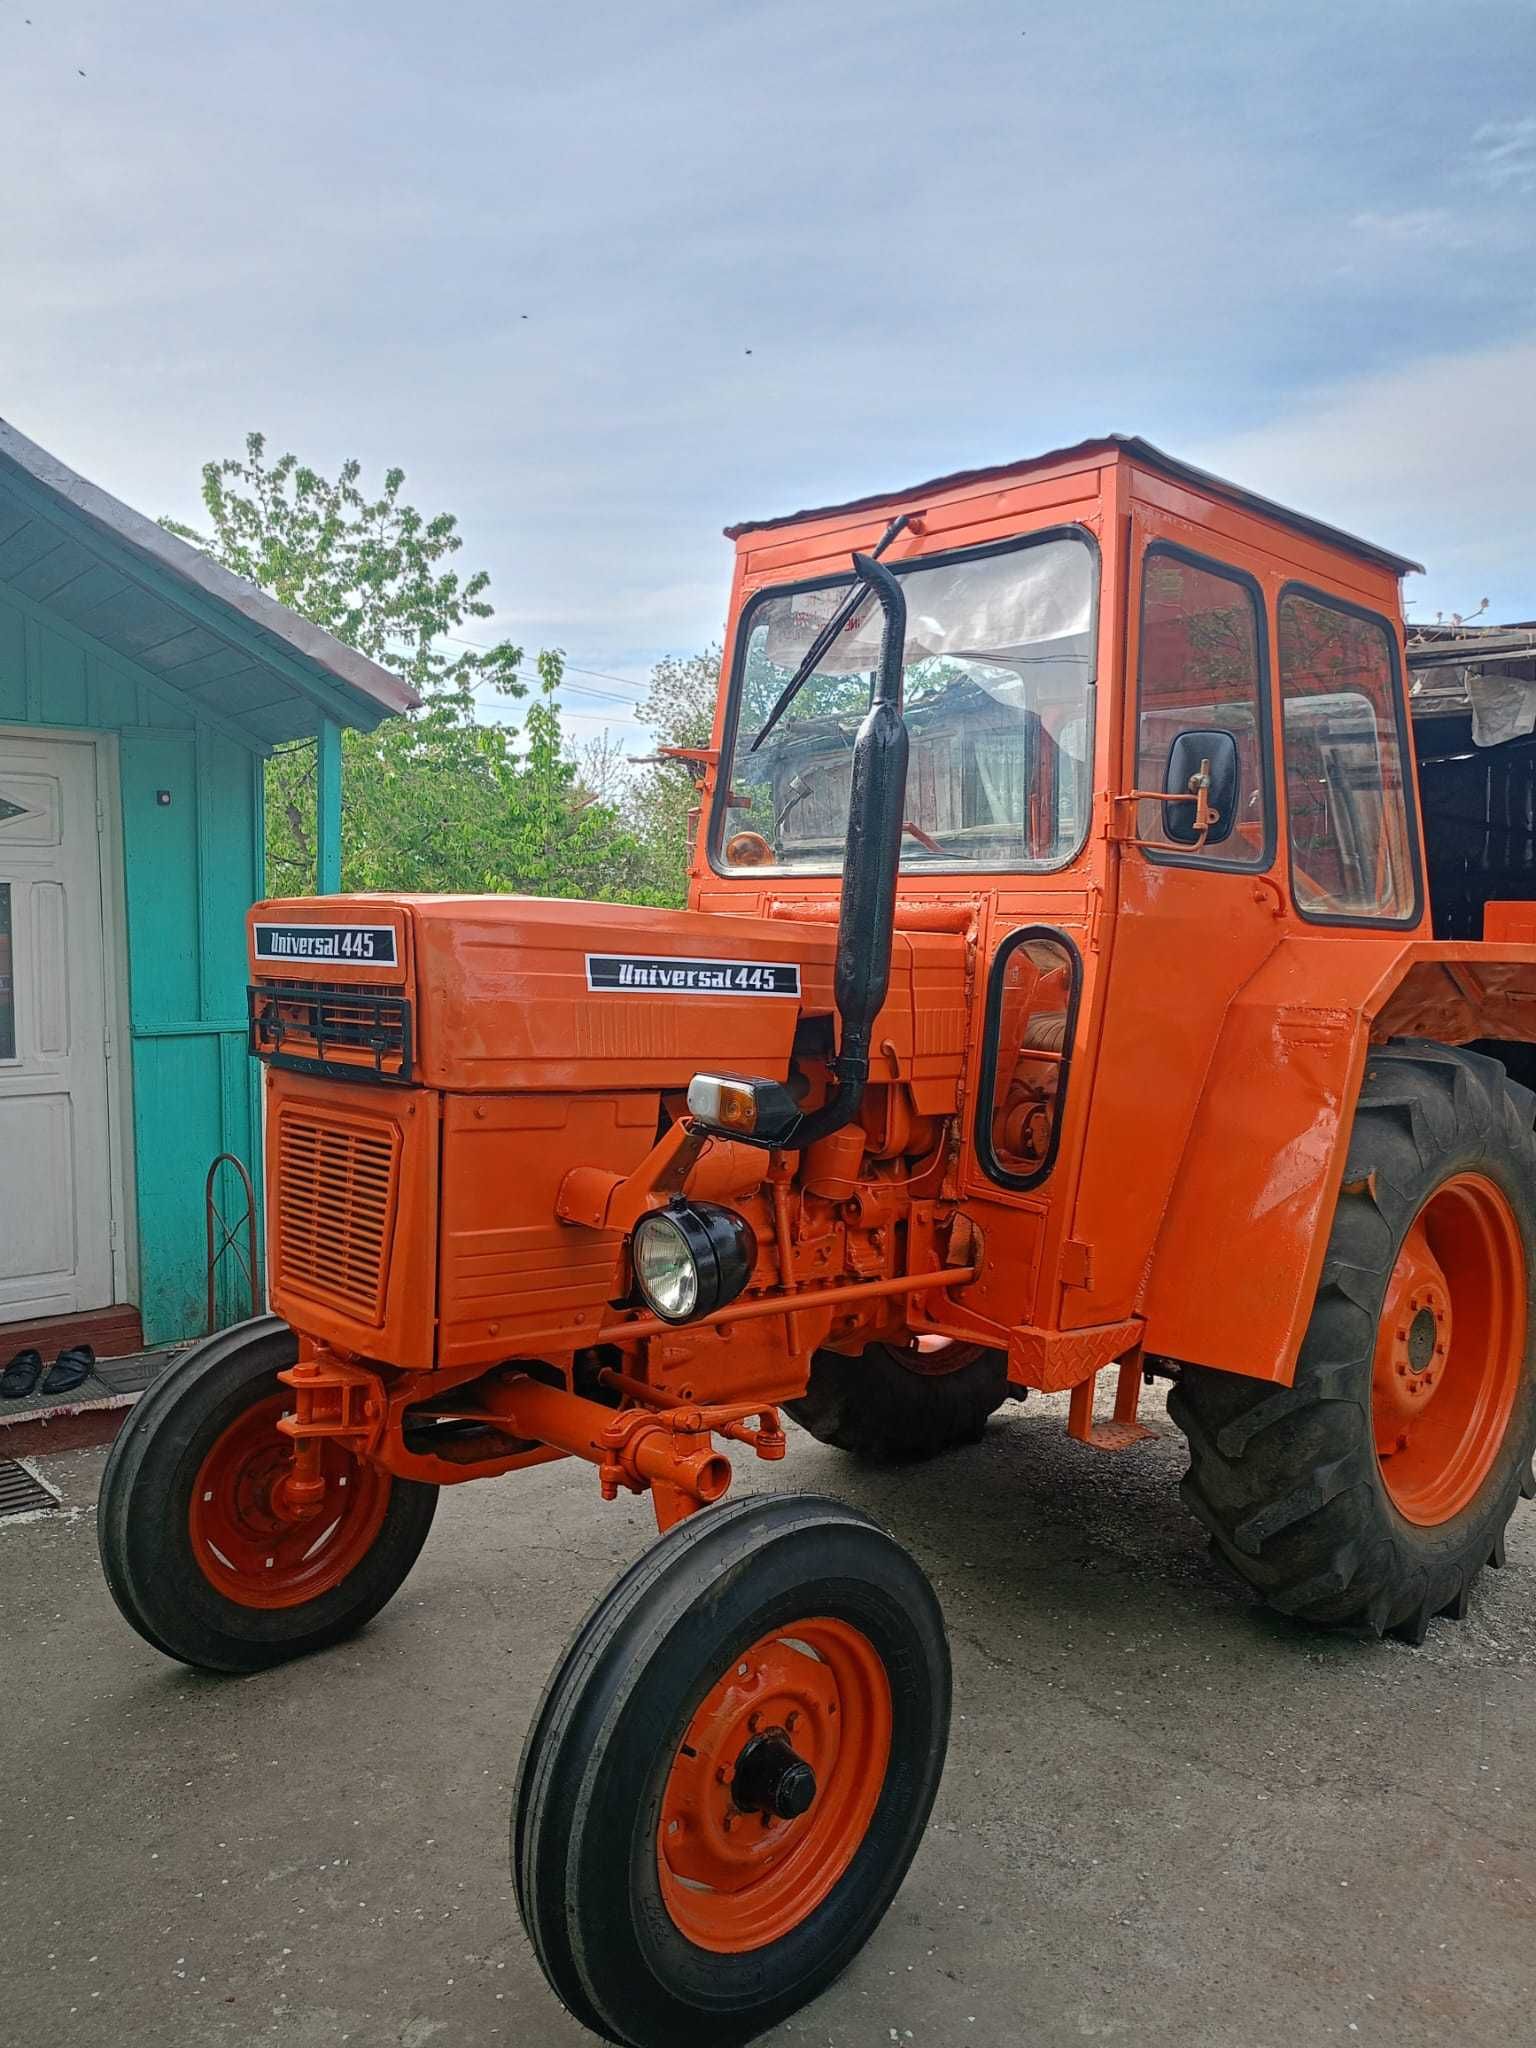 Vând tractor U445 și utilaje agricole pentru micul fermier